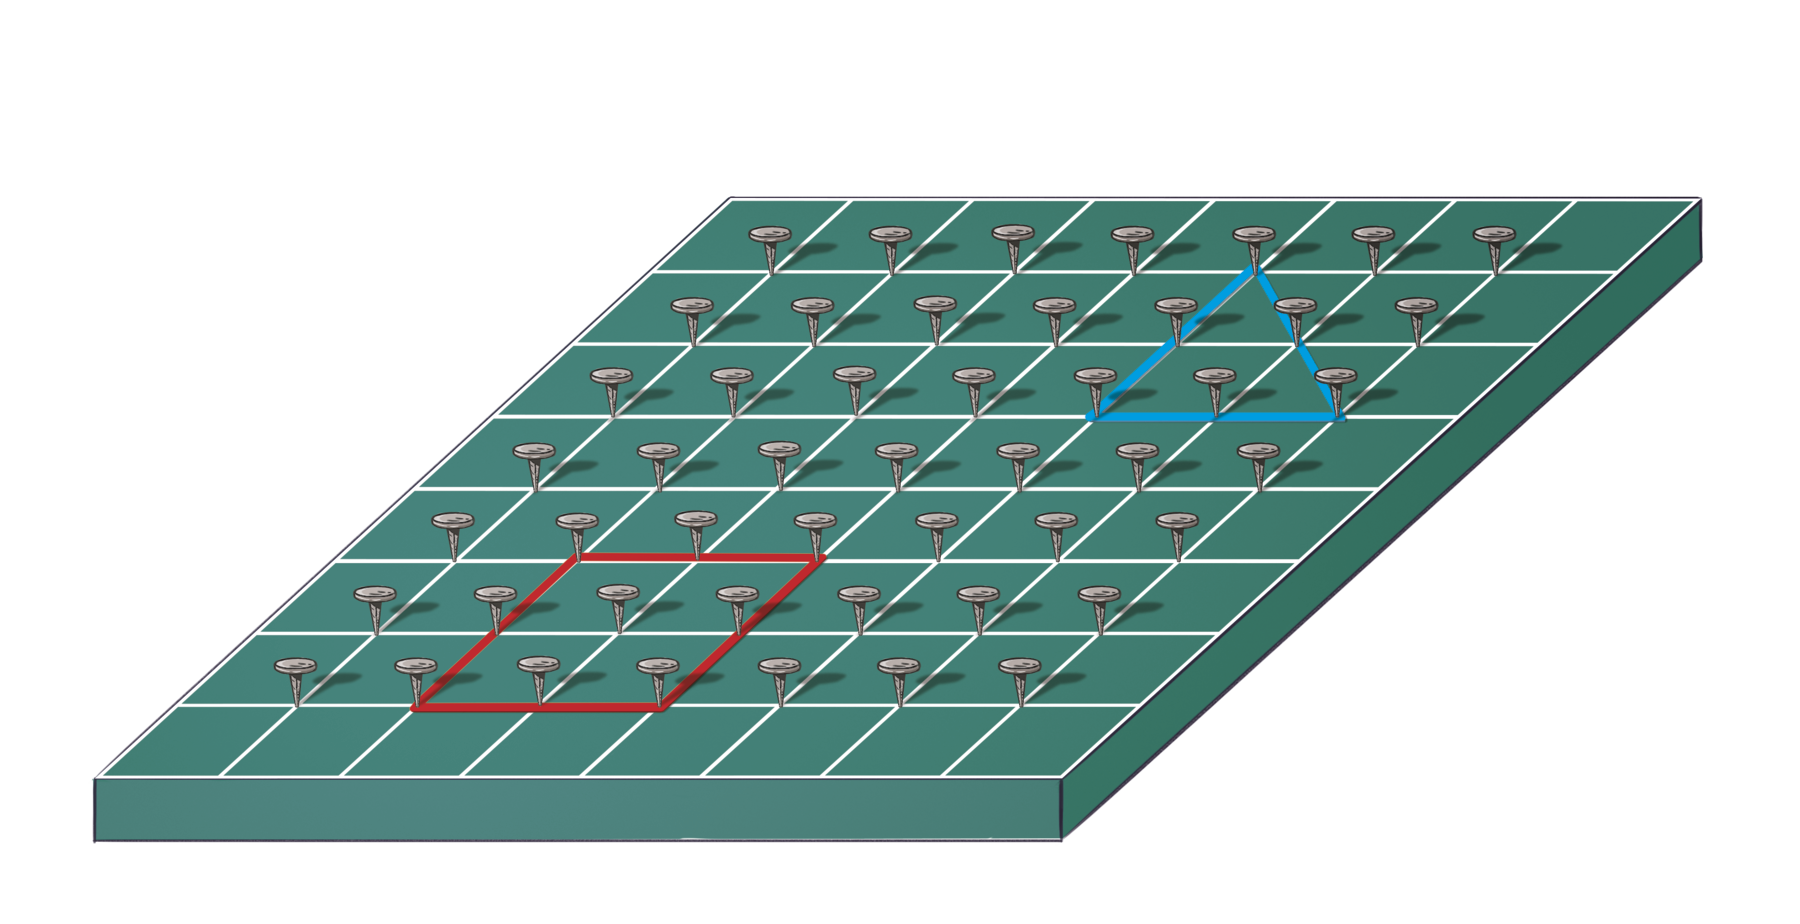 Ilustração. 
Geoplano, composto por base com linhas e colunas de pregos. Há um elástico vermelho formando um quadrado com os pregos, o quadrado possui 8 pregos sustentando seus lados sendo 1 prego no meio do lado e 1 prego em cada vértice, e um elástico azul formando um triângulo, que possui 6 pregos sendo 1 prego no meio de cada lado e 1 prego em cada vértice.